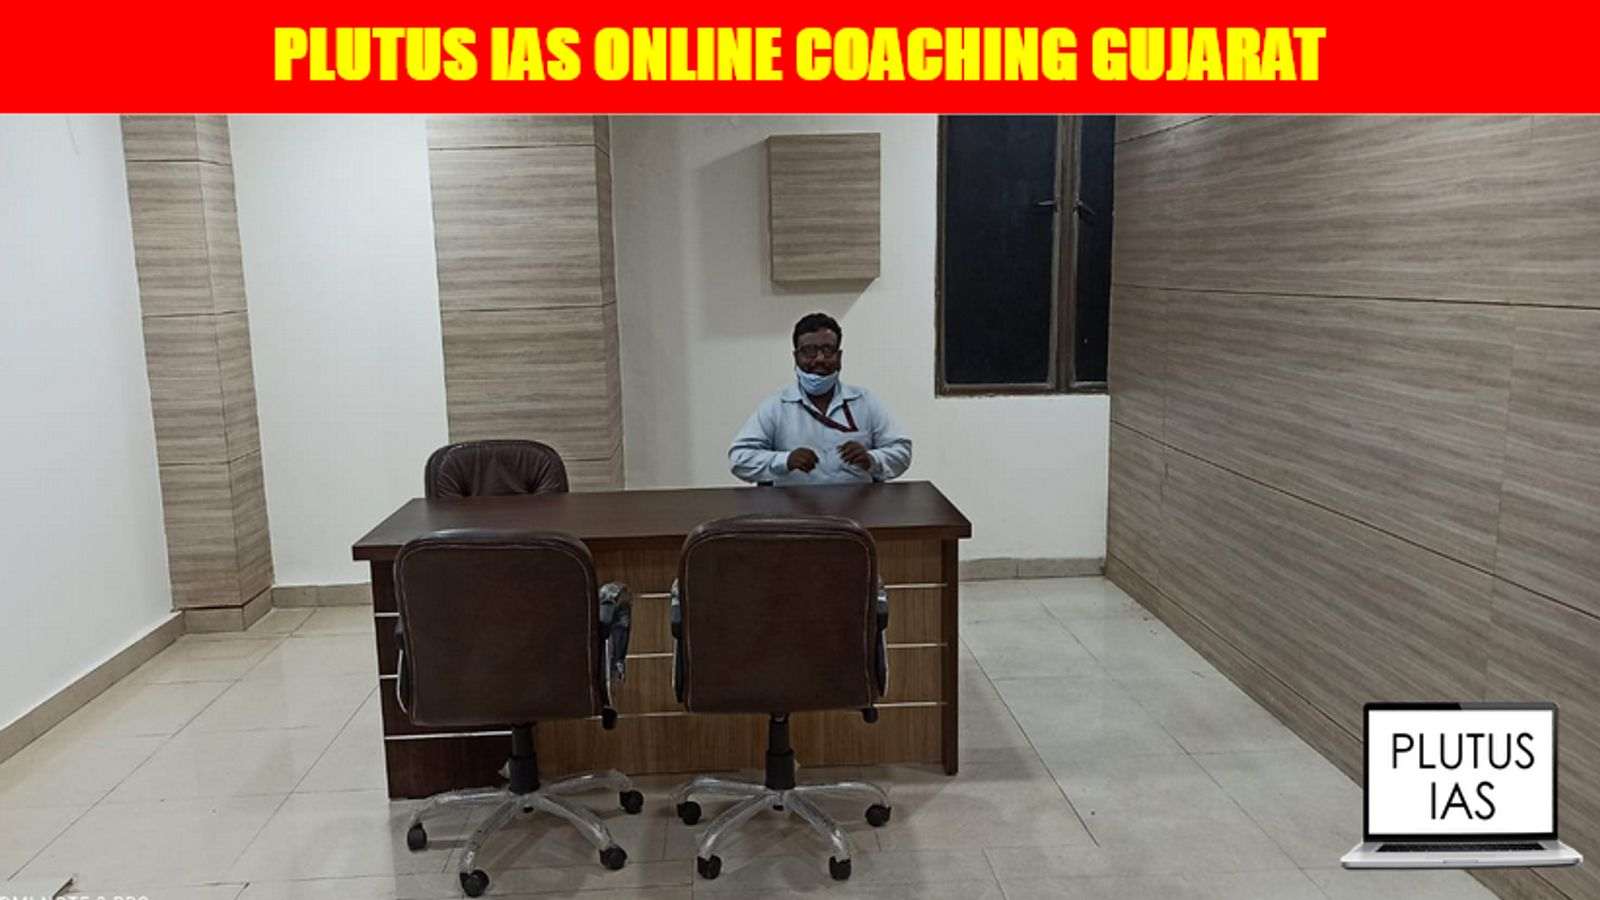 Plutus IAS Online Coaching Gujarat